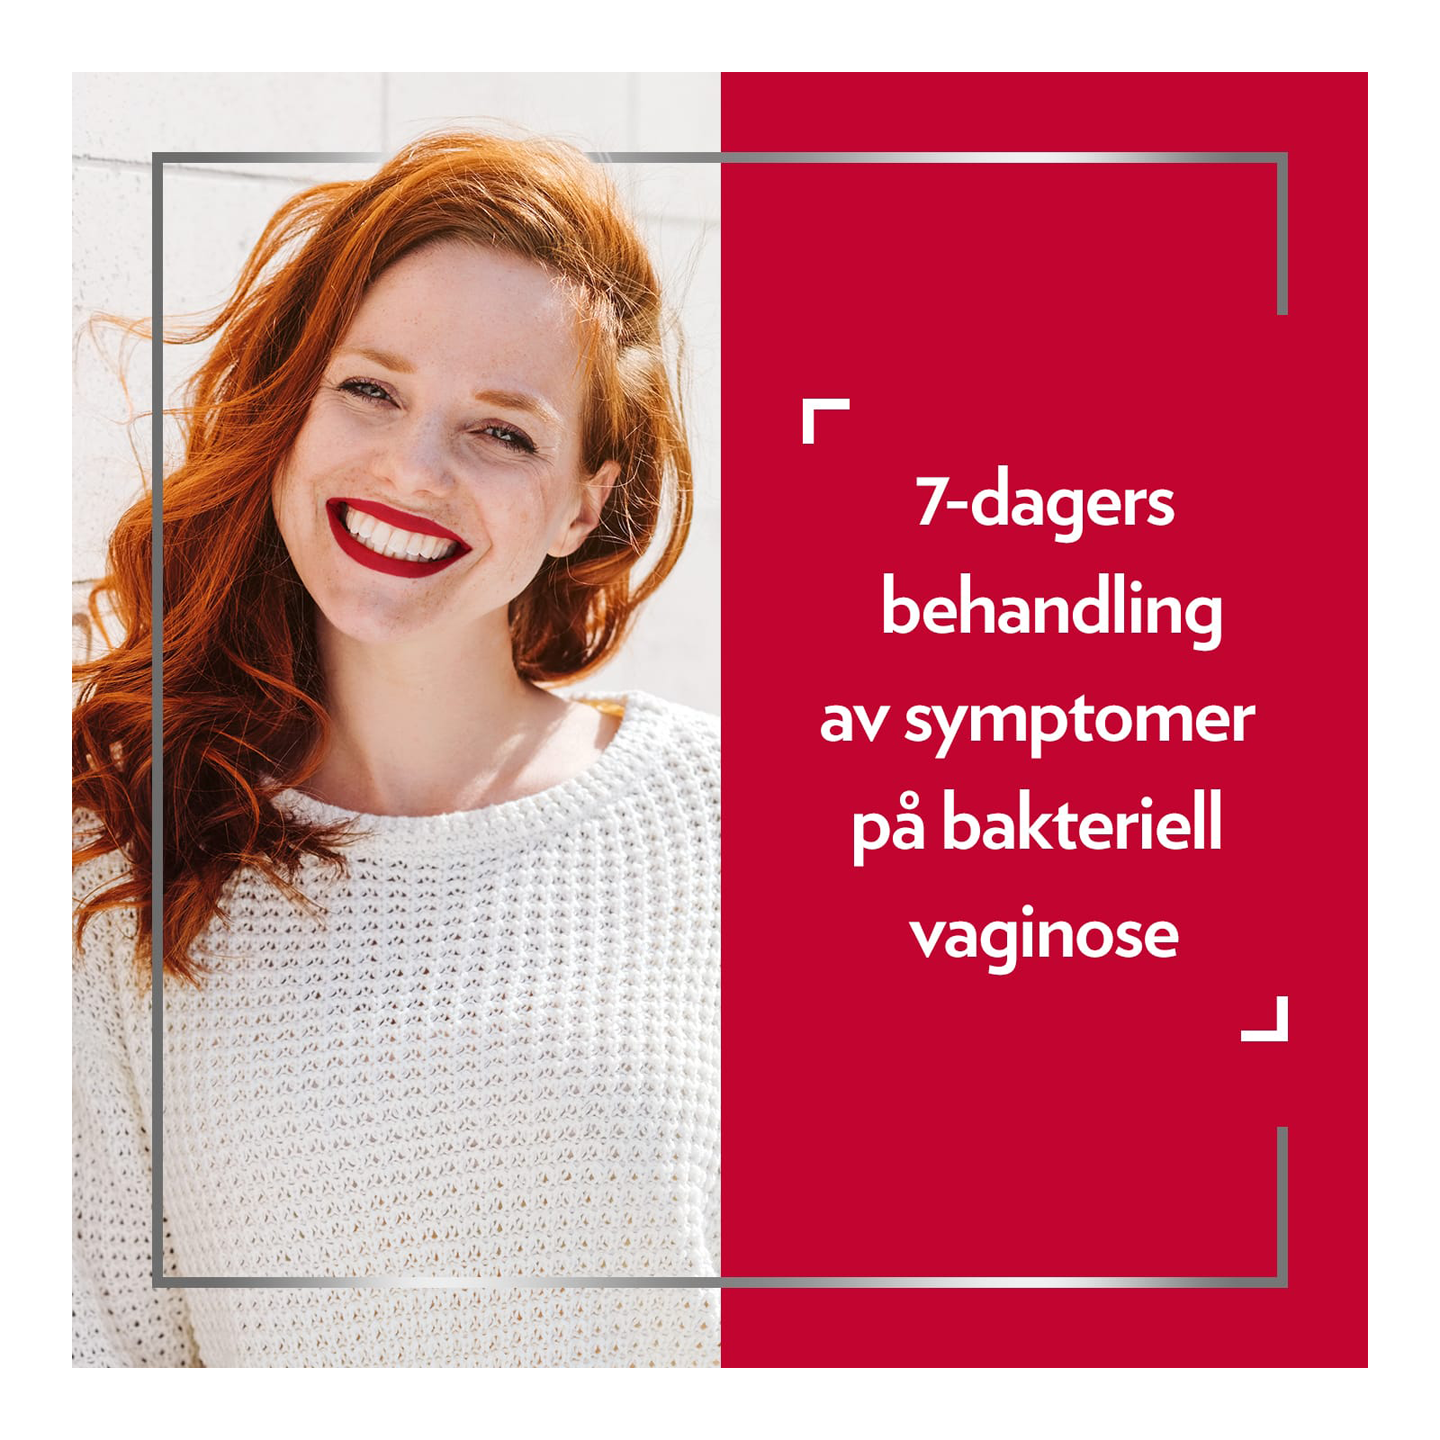 Smilende rødhåret kvinne, med tekst på høyre side av bildet: 7-dagers behandling av symptomer på bakteriell vaginose